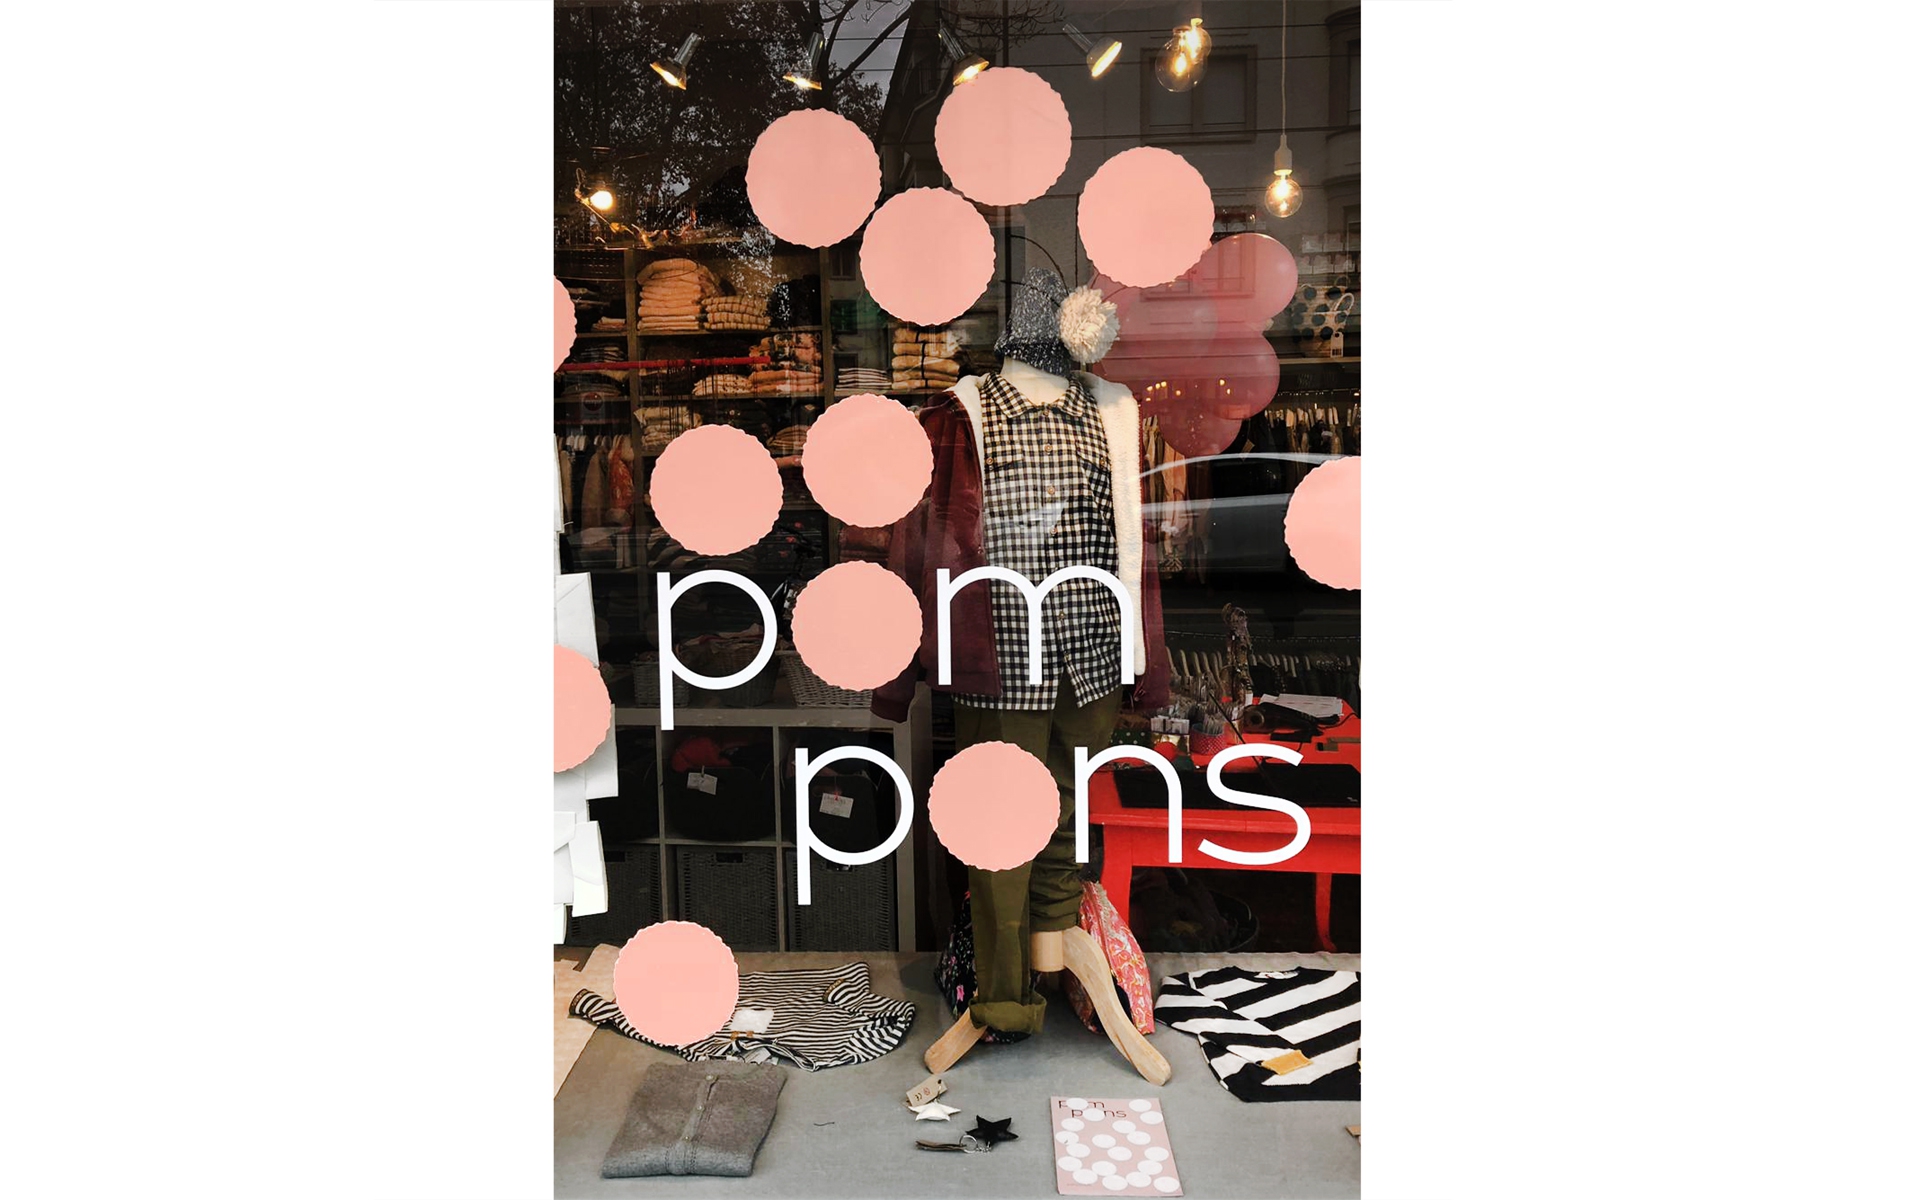 pompons-shopfront-31346.jpg